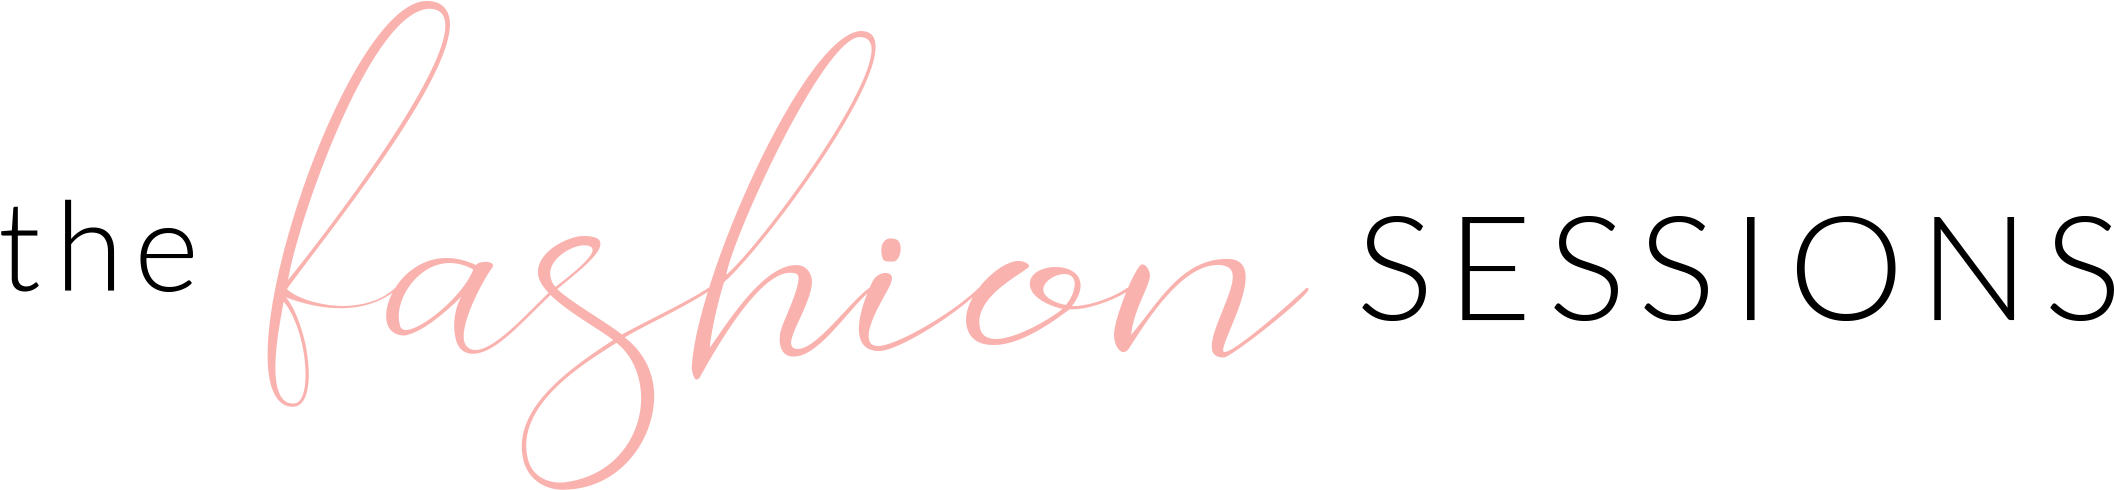 Fashion Sessions Logo